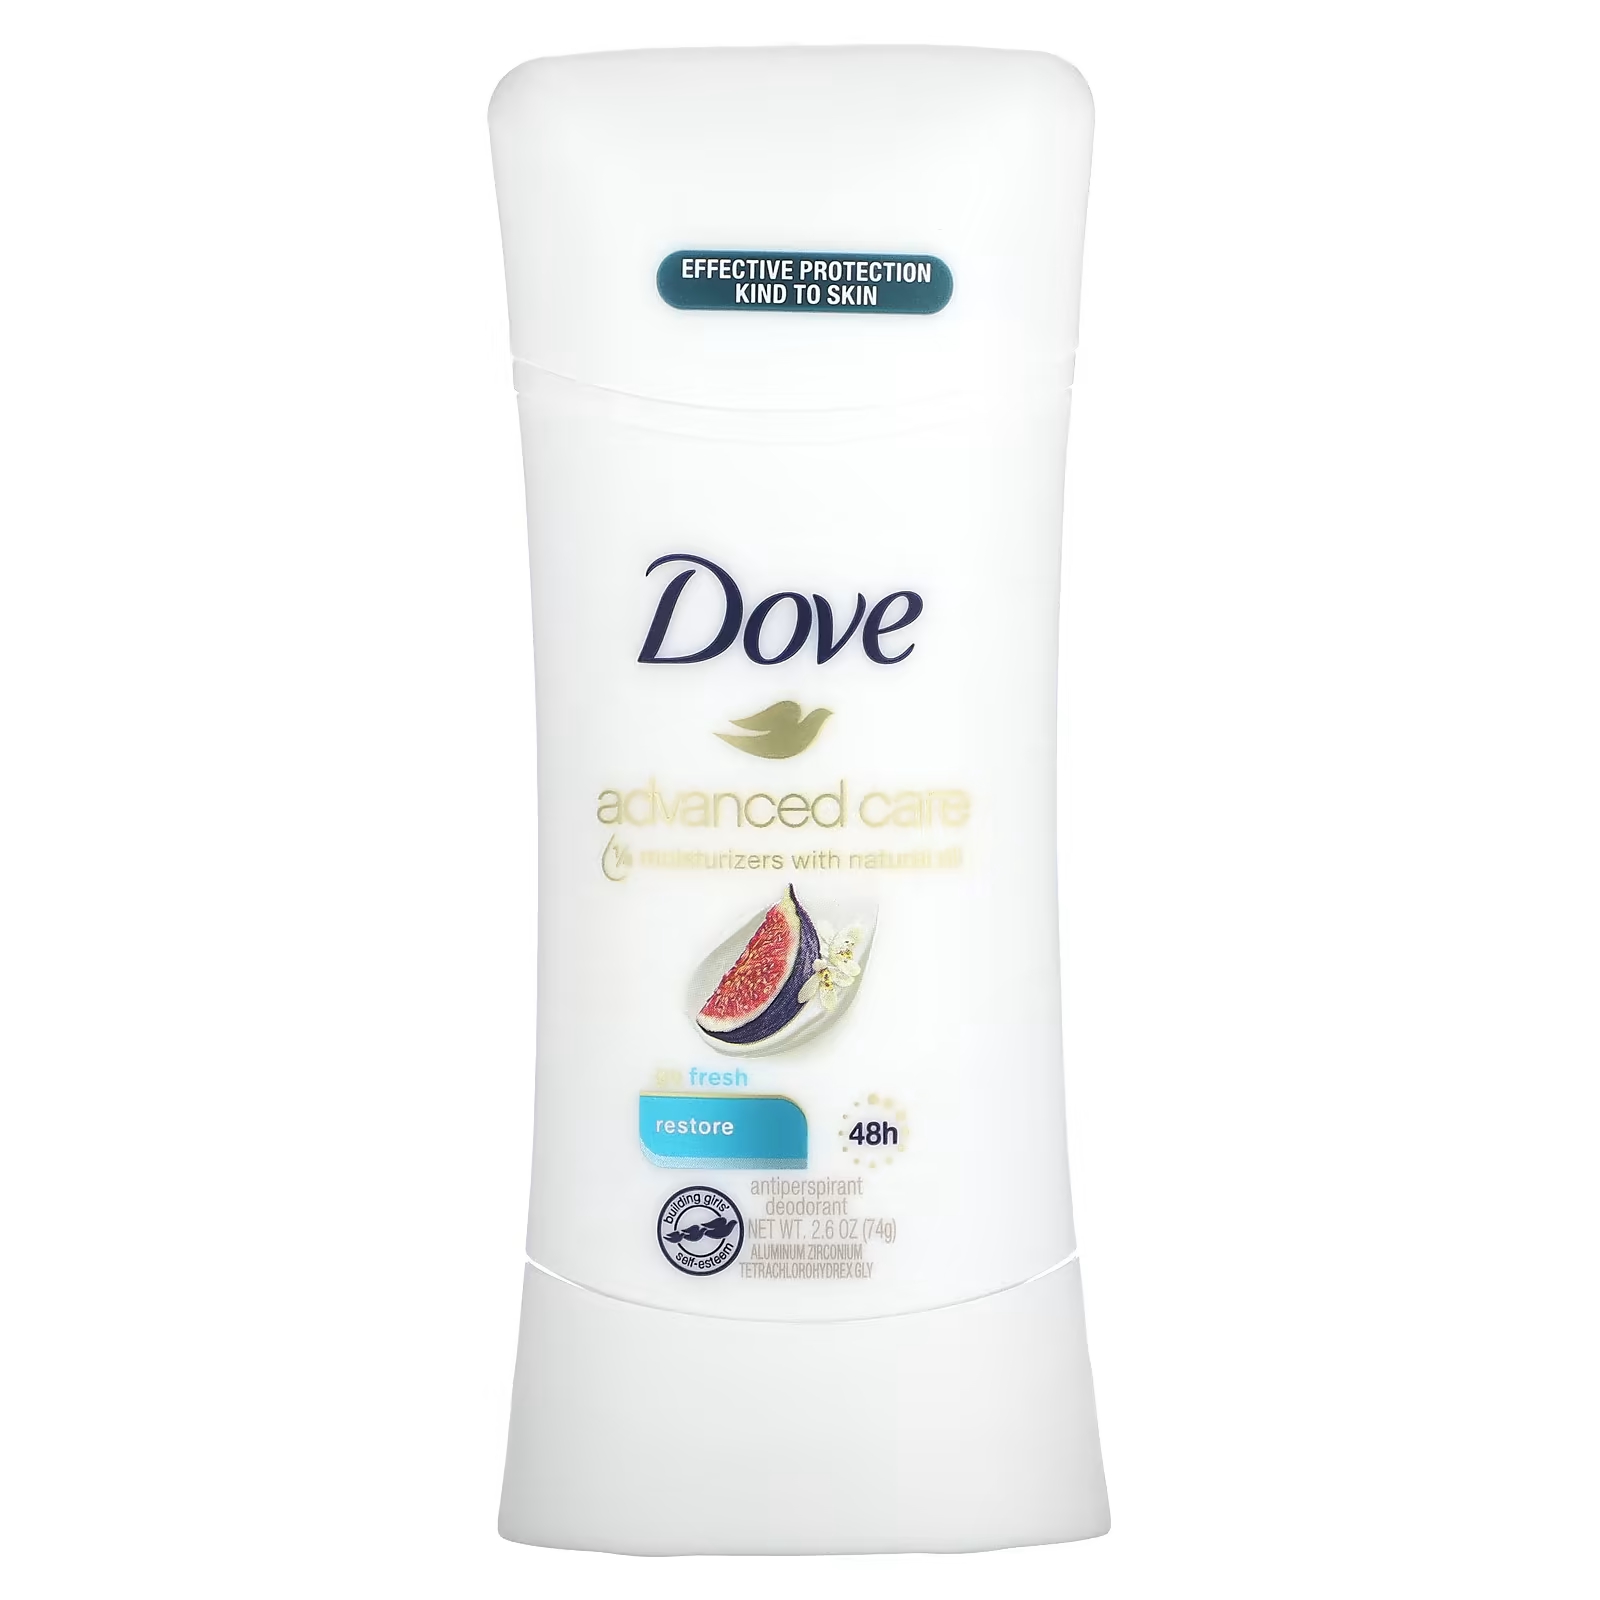 Дезодорант-антиперспирант Dove Advanced Care Go Fresh восстанавливающий, 74 гр. цена и фото